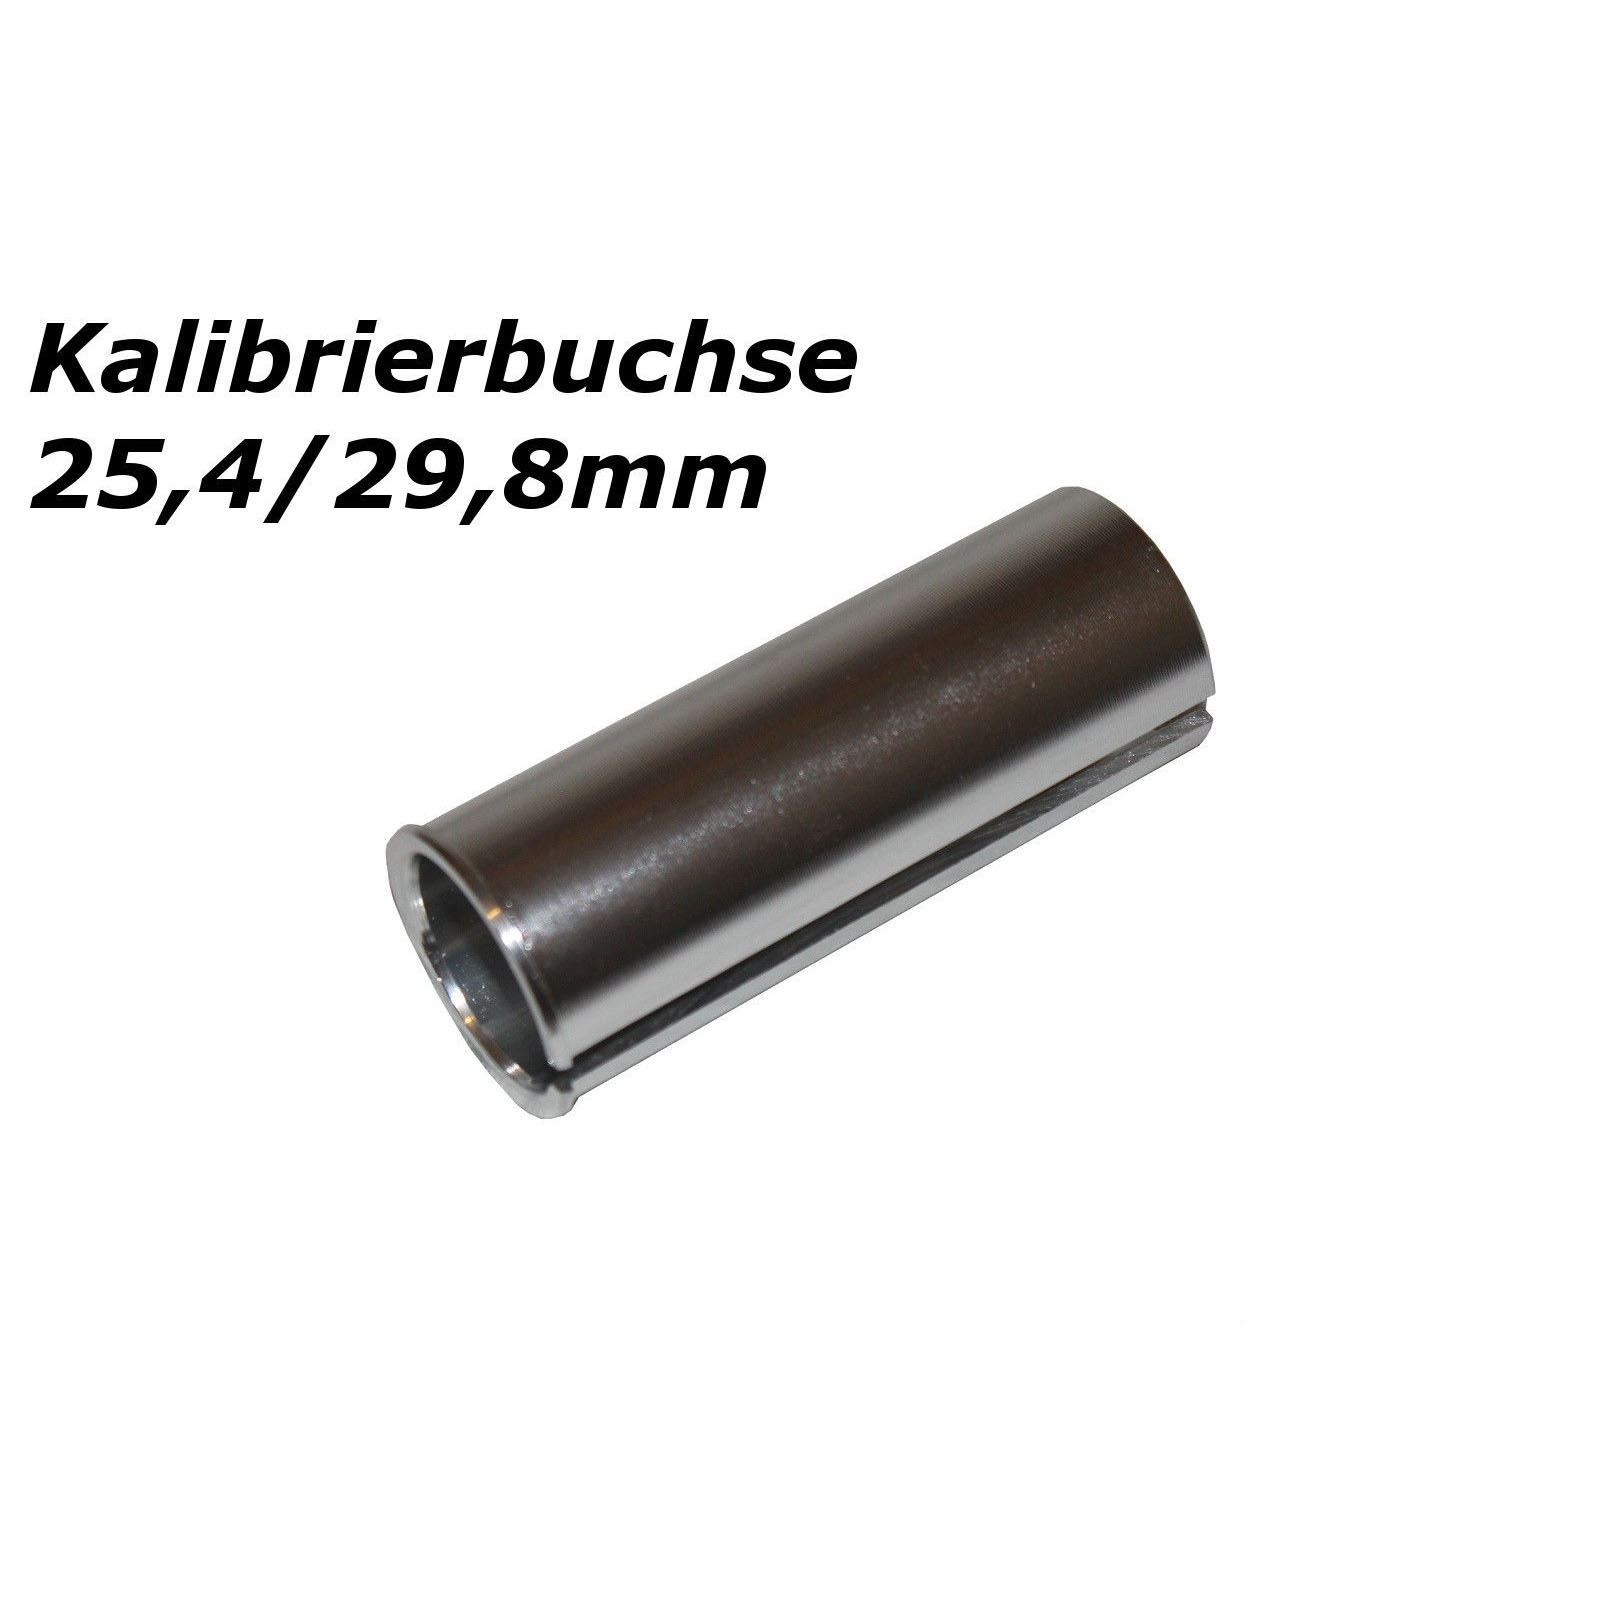 Kalibrierbuchse 25,4/29,8mm